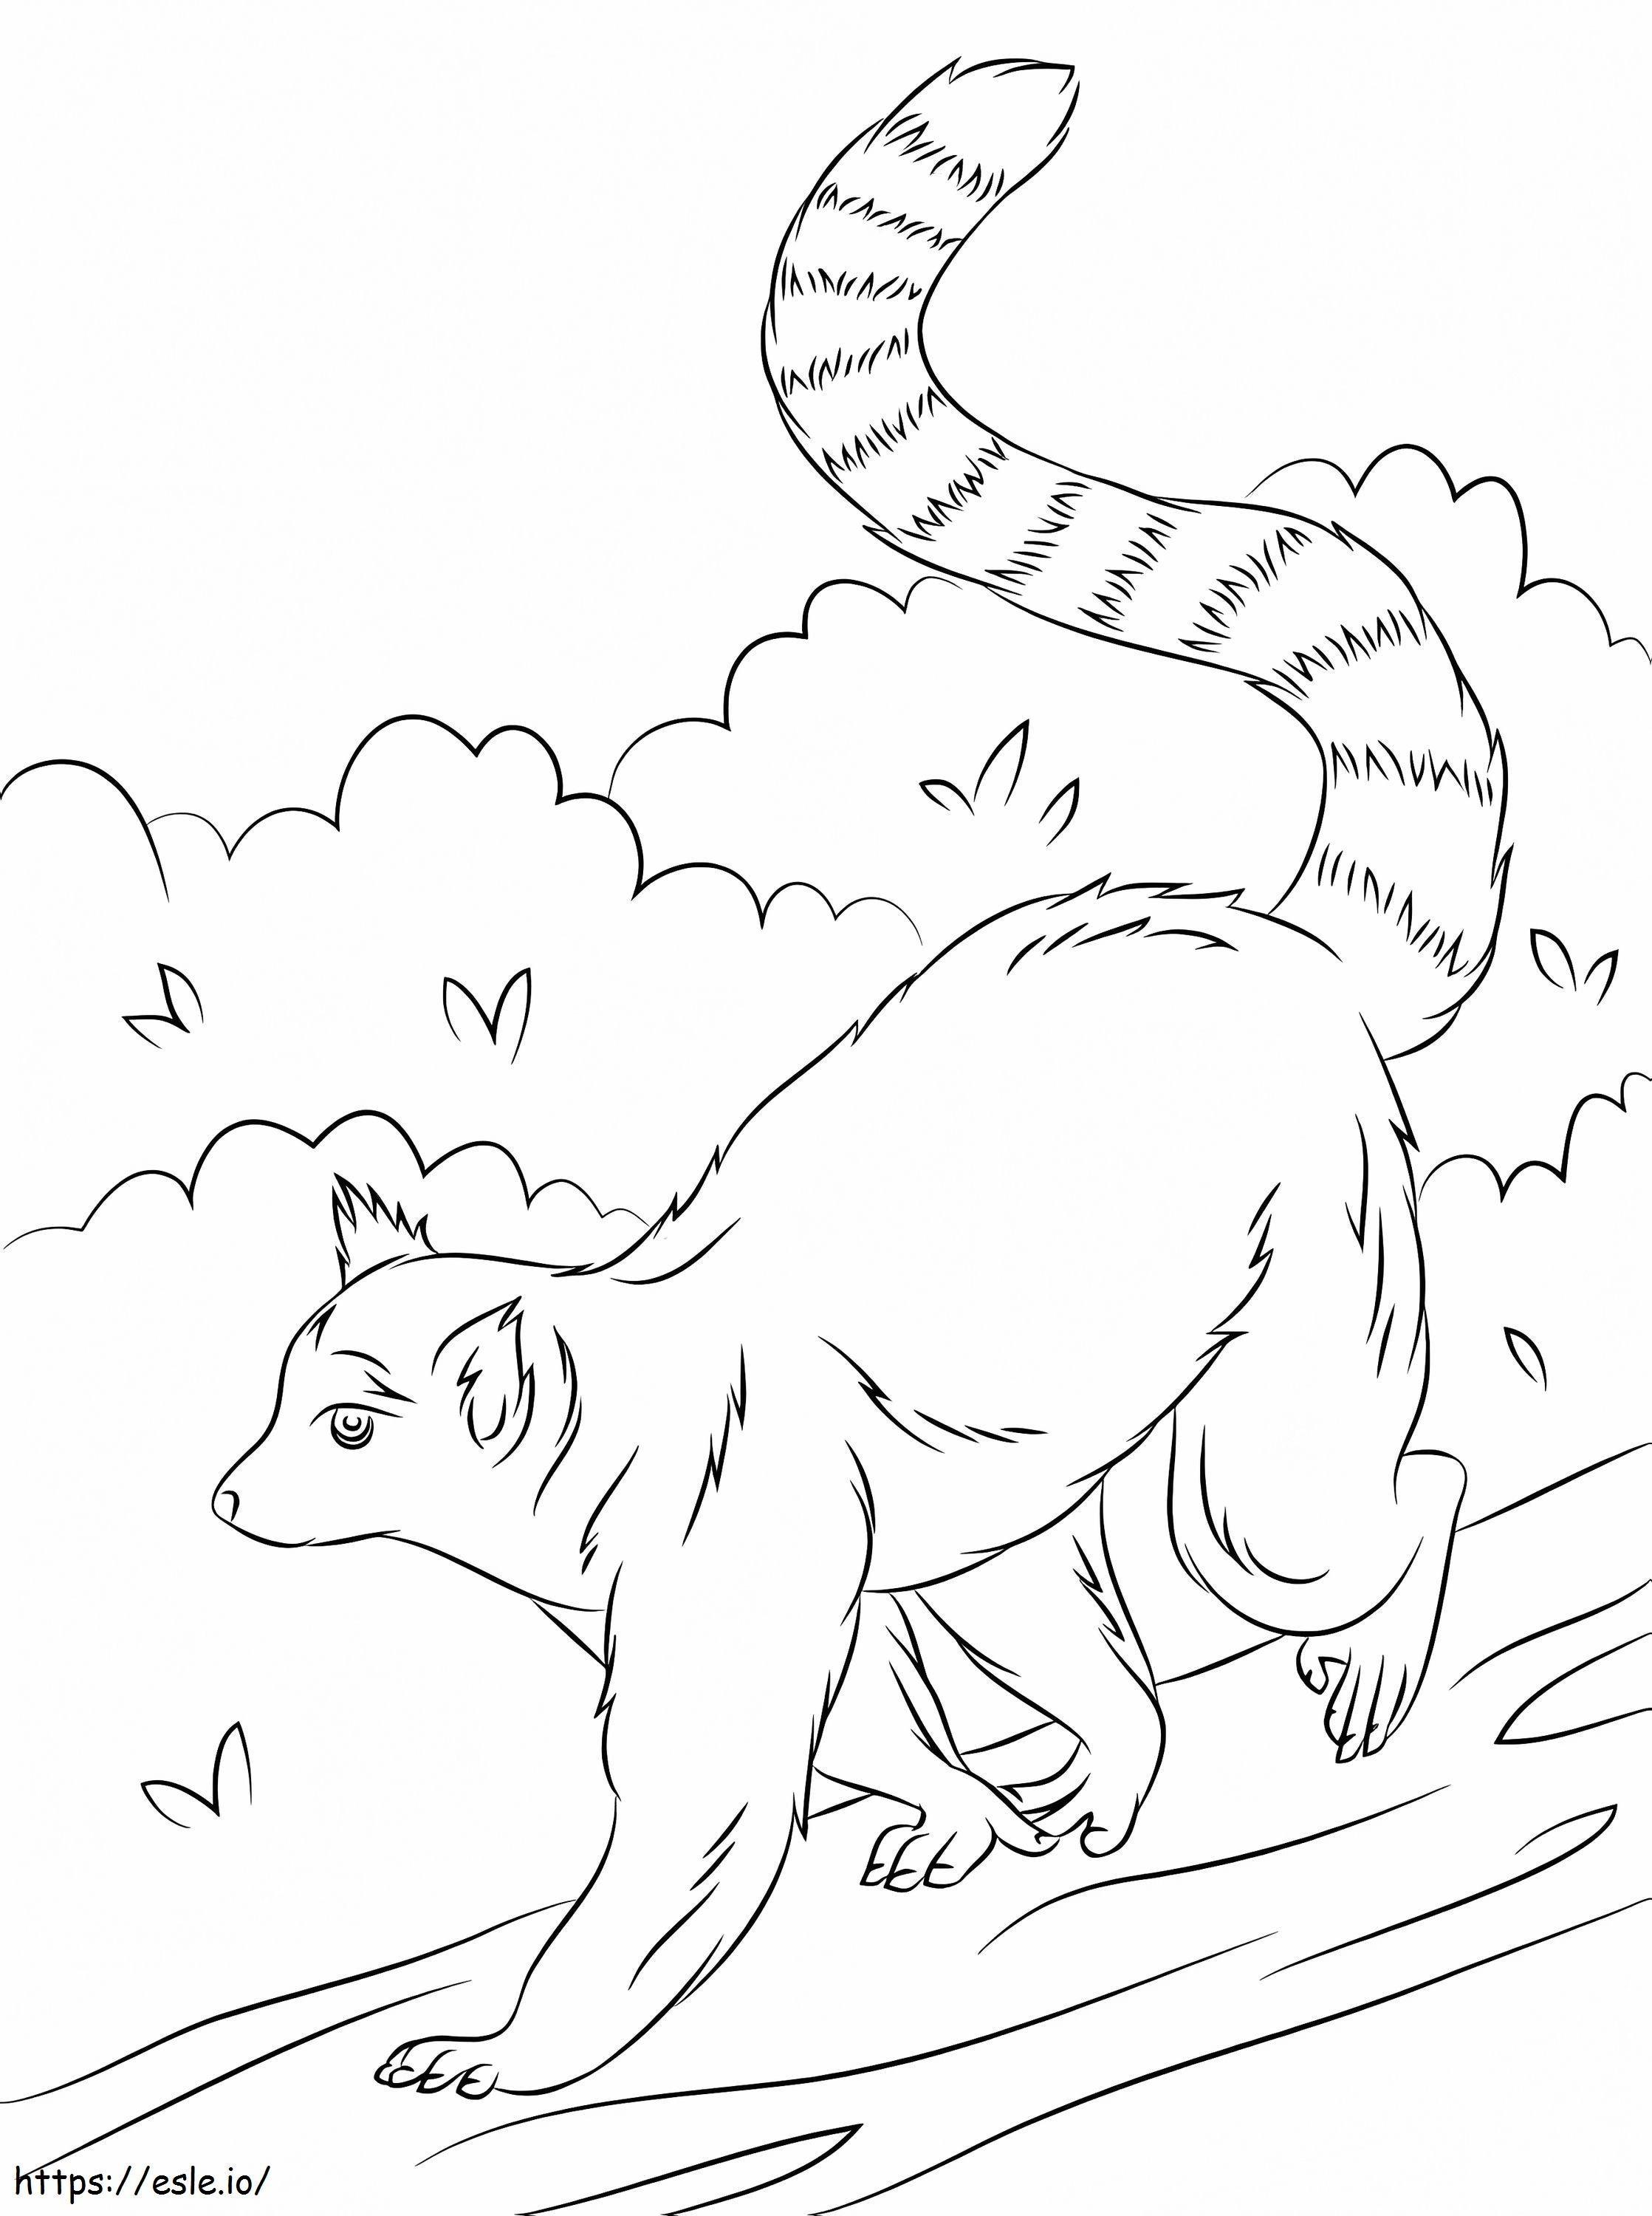 Lemur Walking coloring page